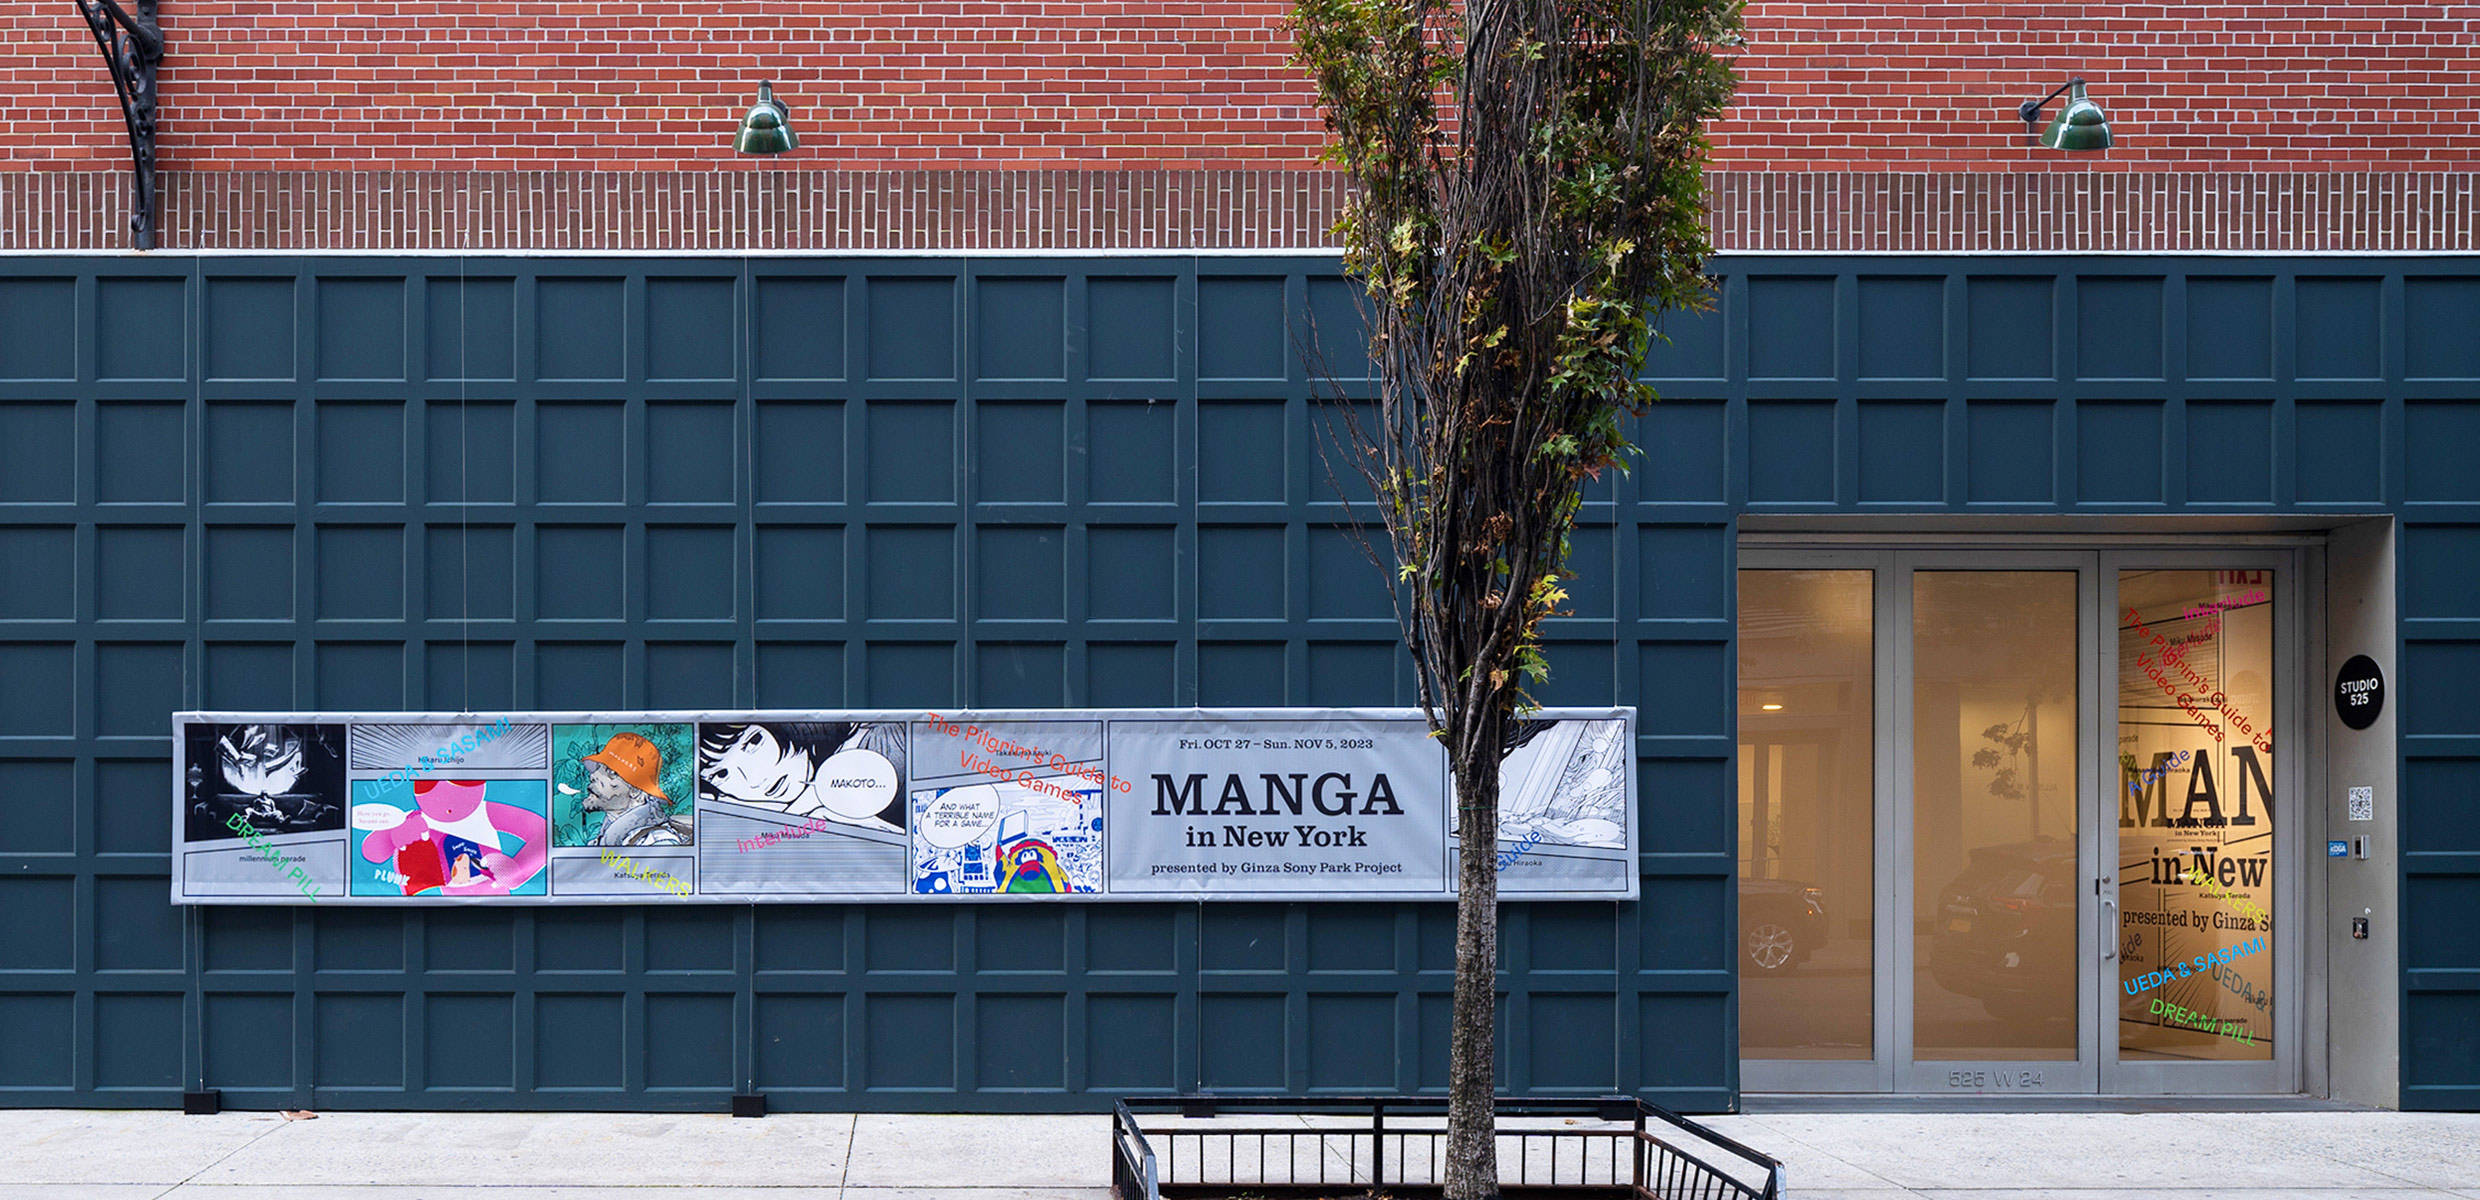 エキシビション『Manga in New York』が行われた会場の外観、入り口。濃緑のタイルの壁面に、Manga in New Yorkの看板が吊り下がっている。